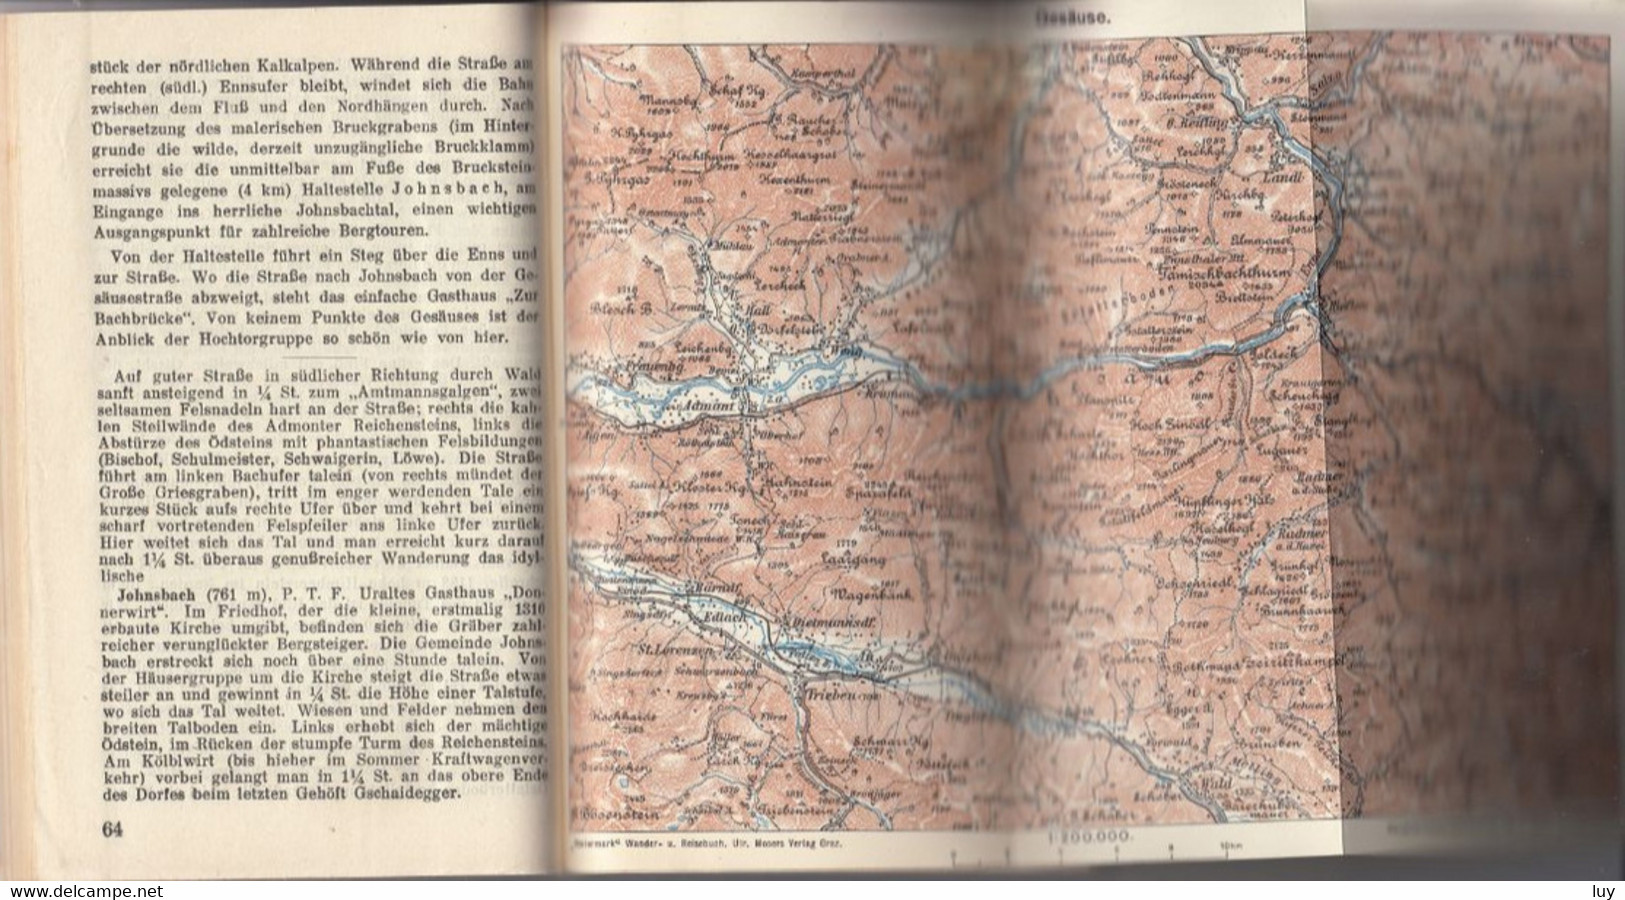 Reise- Und Wanderbuch STEIERMARK - Das Ennstal Und Das Ausseer Becken,  1939 - Oesterreich